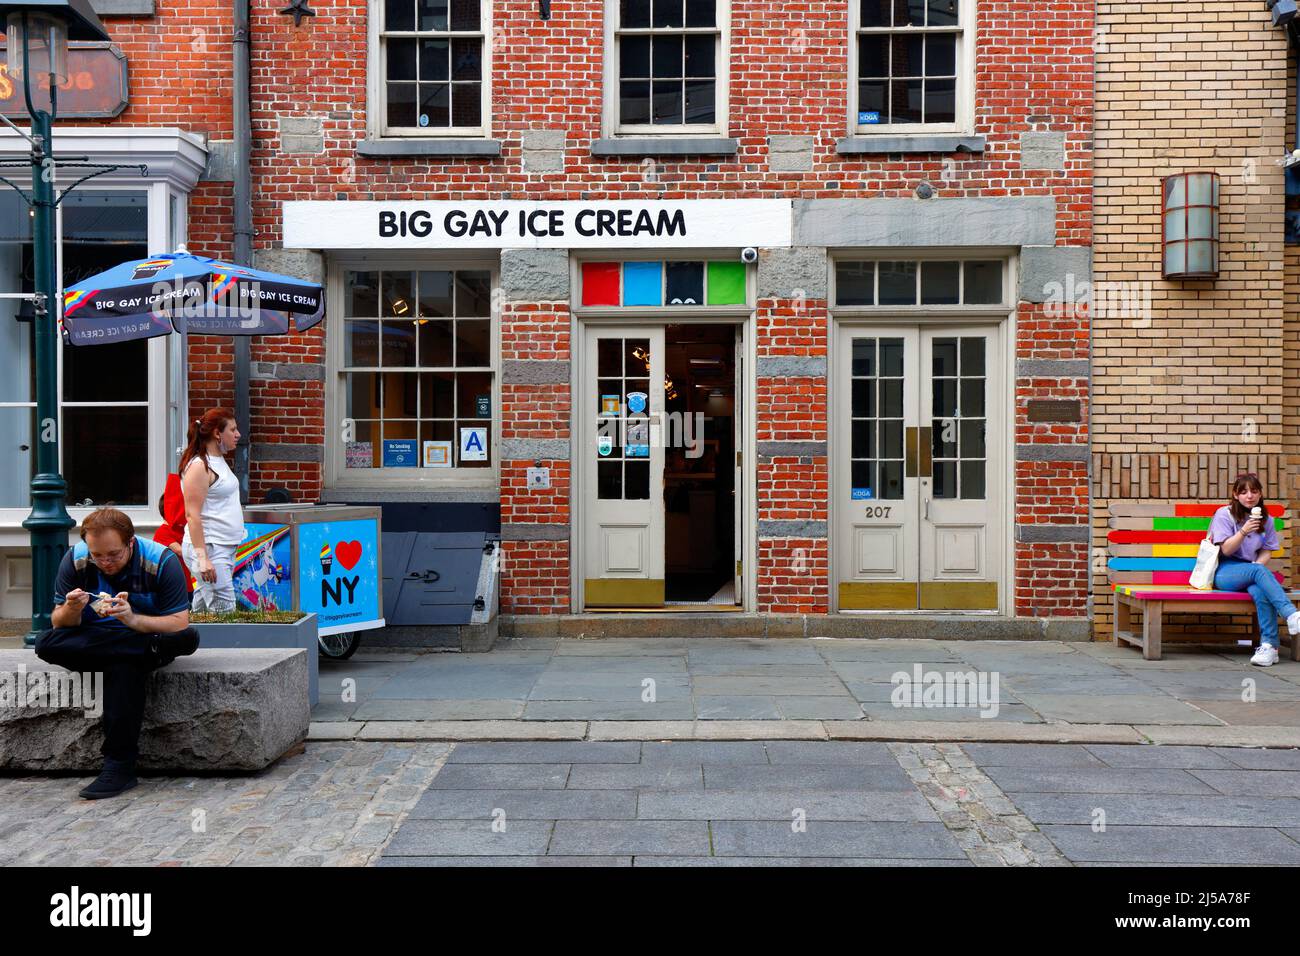 Big gay Ice Cream Shop, 207 Front St, New York, NYC boutique photo d'un magasin de glaces à service doux dans le South Street Seaport. Banque D'Images